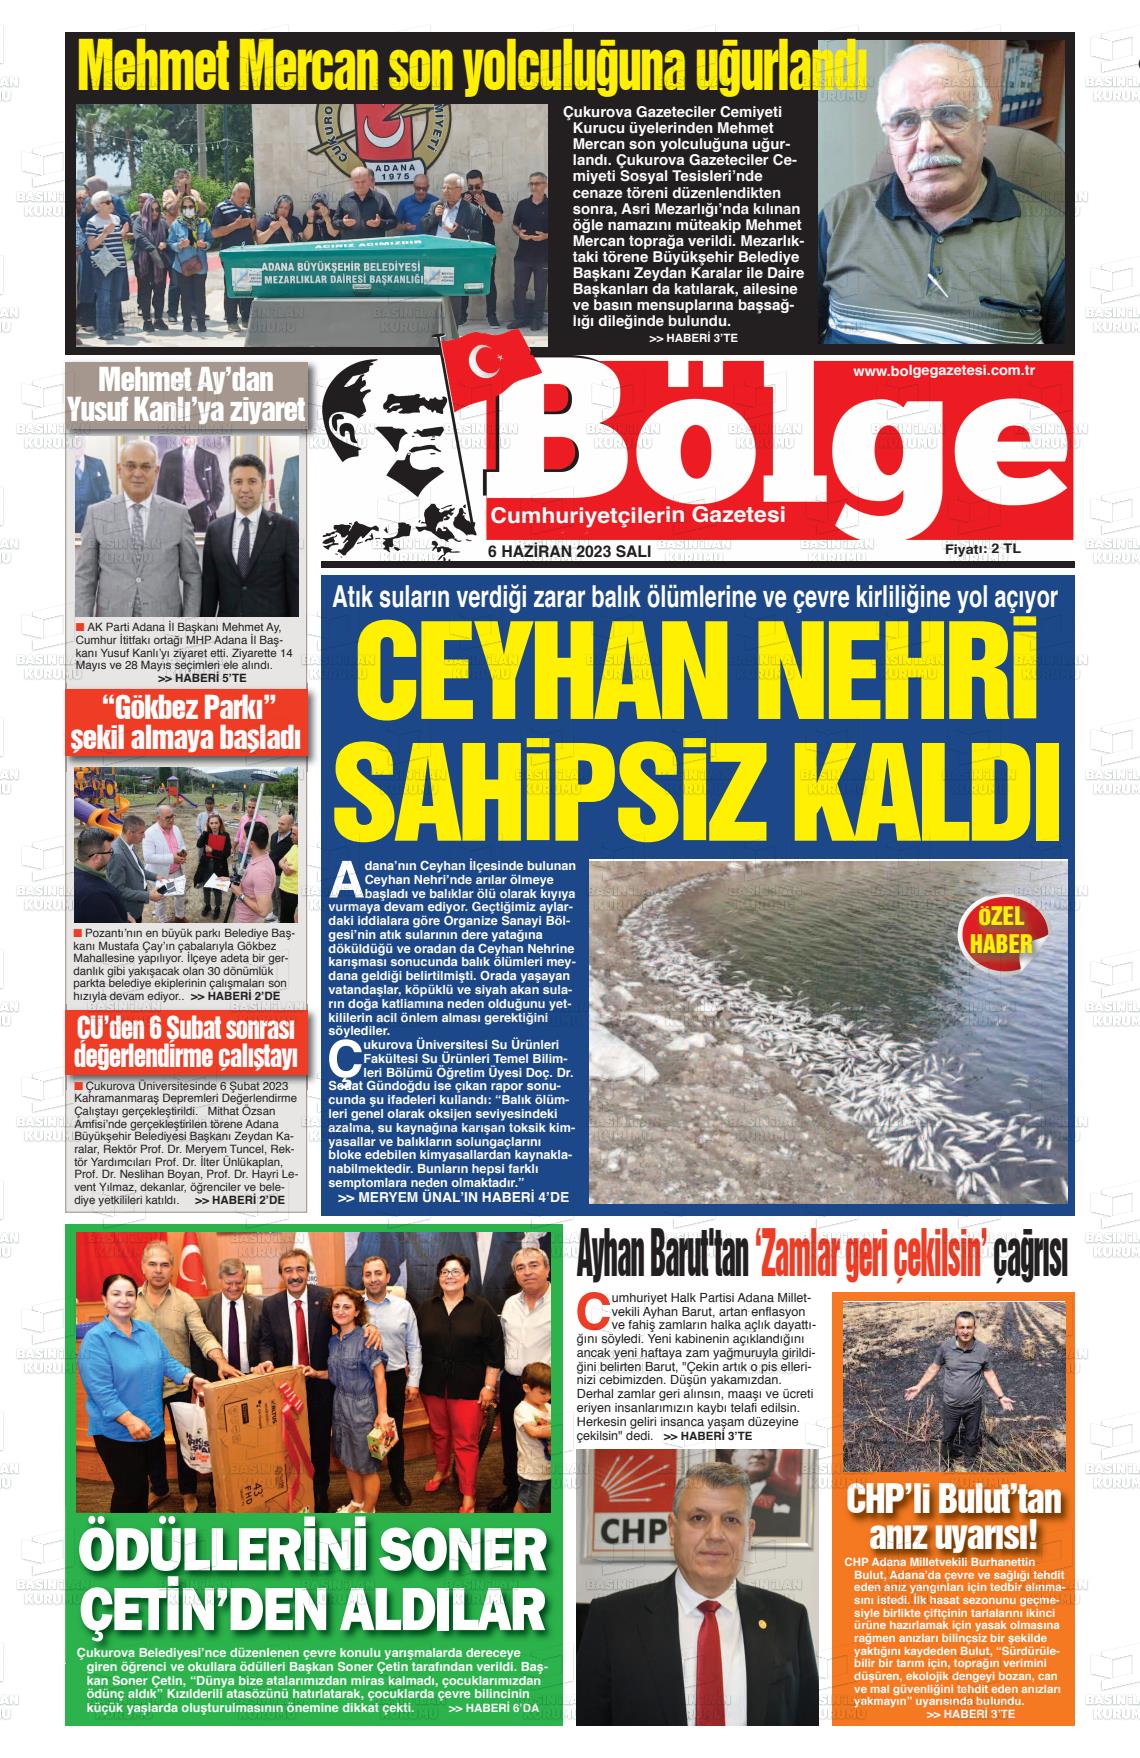 06 Haziran 2023 Adana Bölge Gazete Manşeti